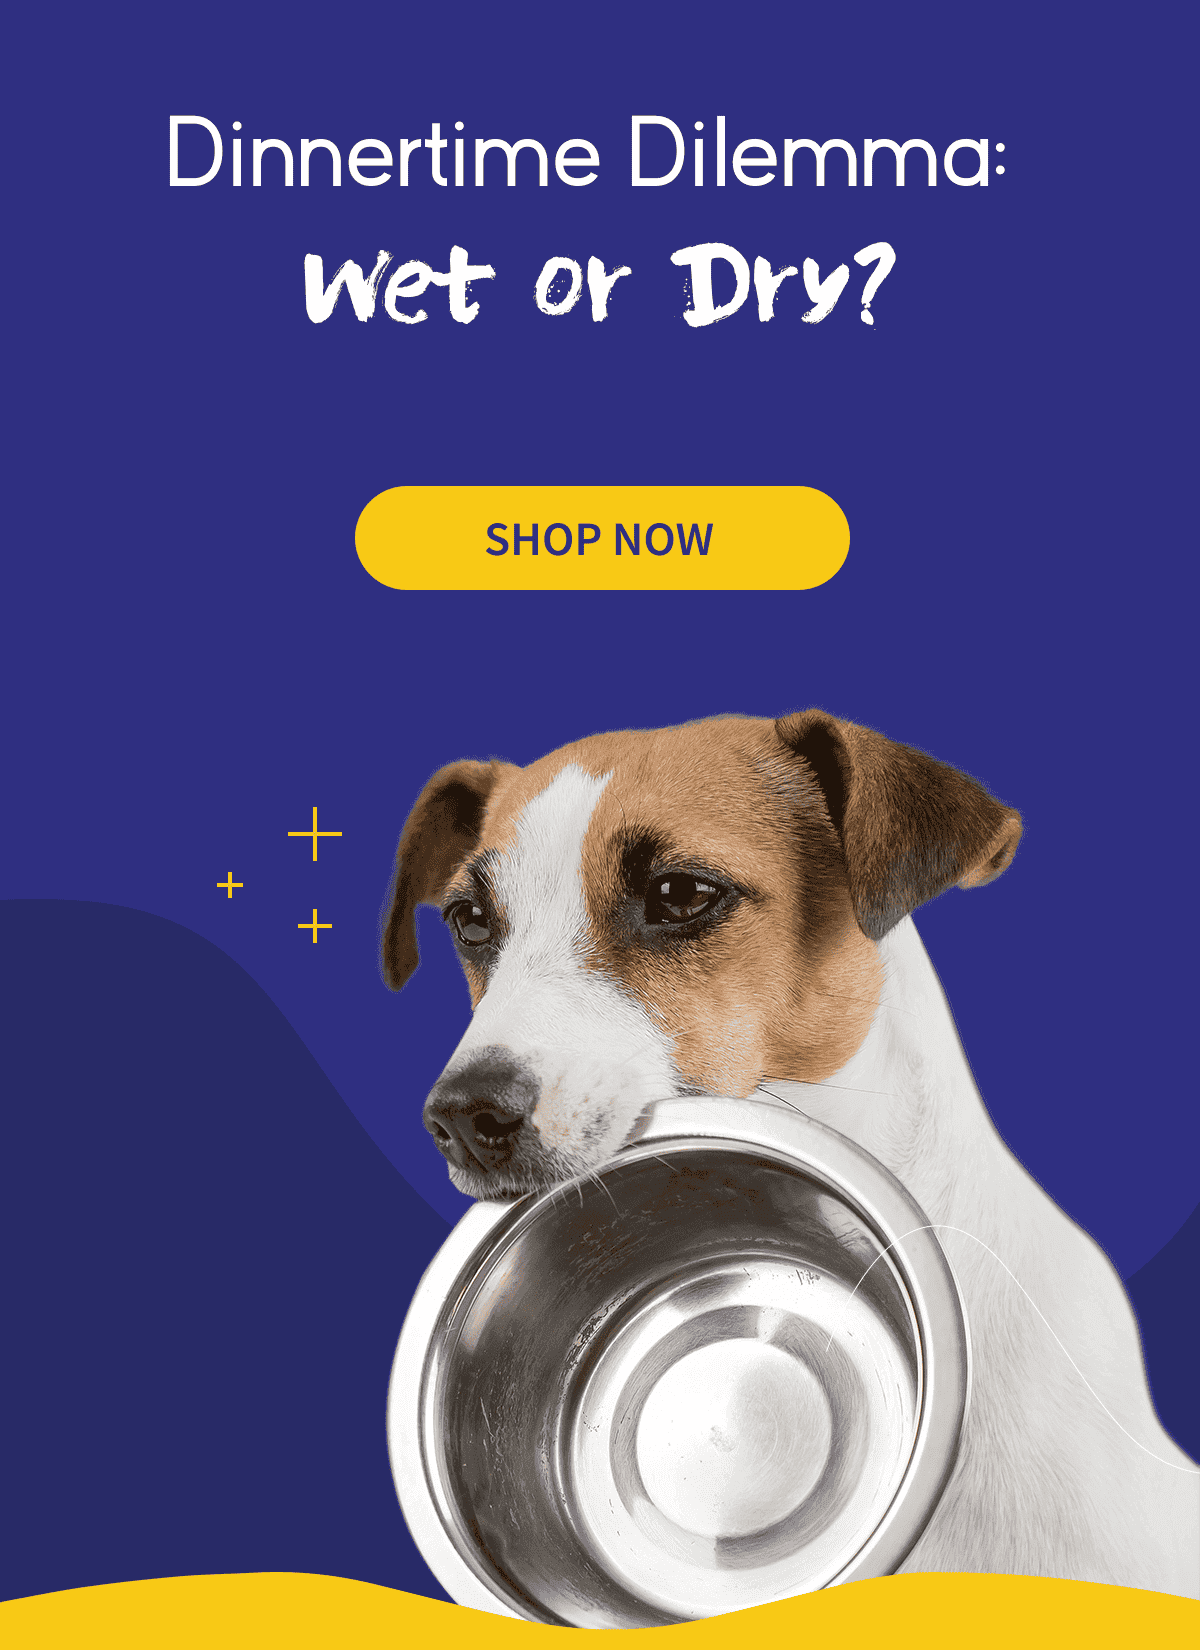 Dinnertime dilemma: Wet or dry?